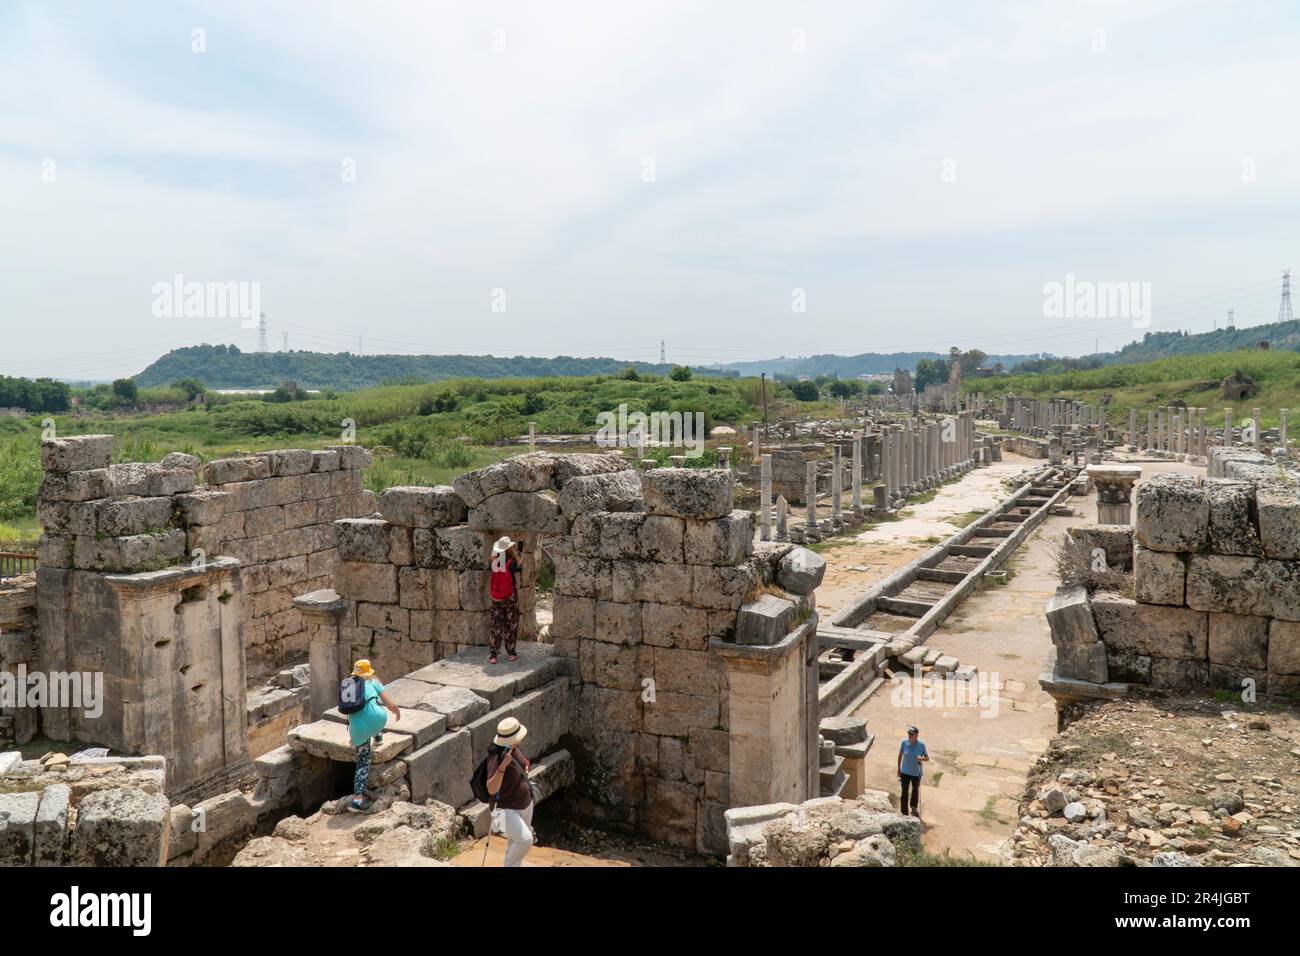 Ruinen von Perge (Perga) in der Provinz Antalya, Türkiye. Blick auf die antike griechische Stadt. Touristen laufen in einem beliebten Touristenziel in der Türkei Stockfoto